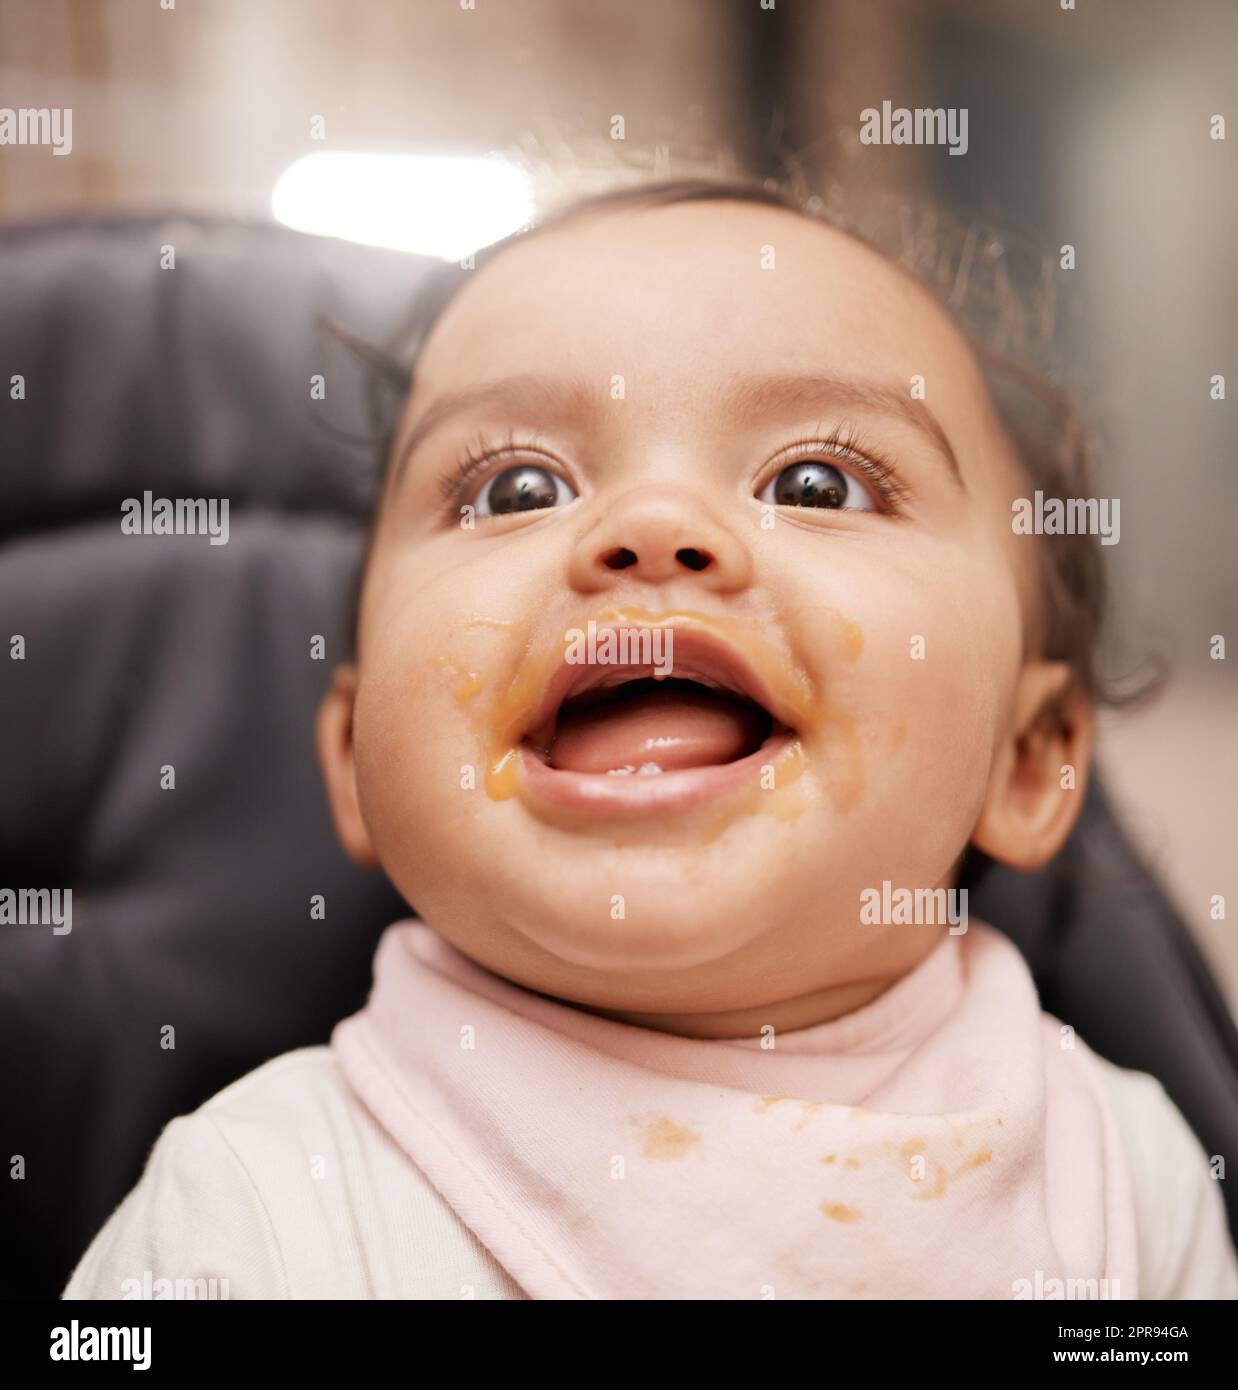 La palude al suo più felice dopo un'alimentazione. Una ragazza adorabile del bambino che sorride. Foto Stock